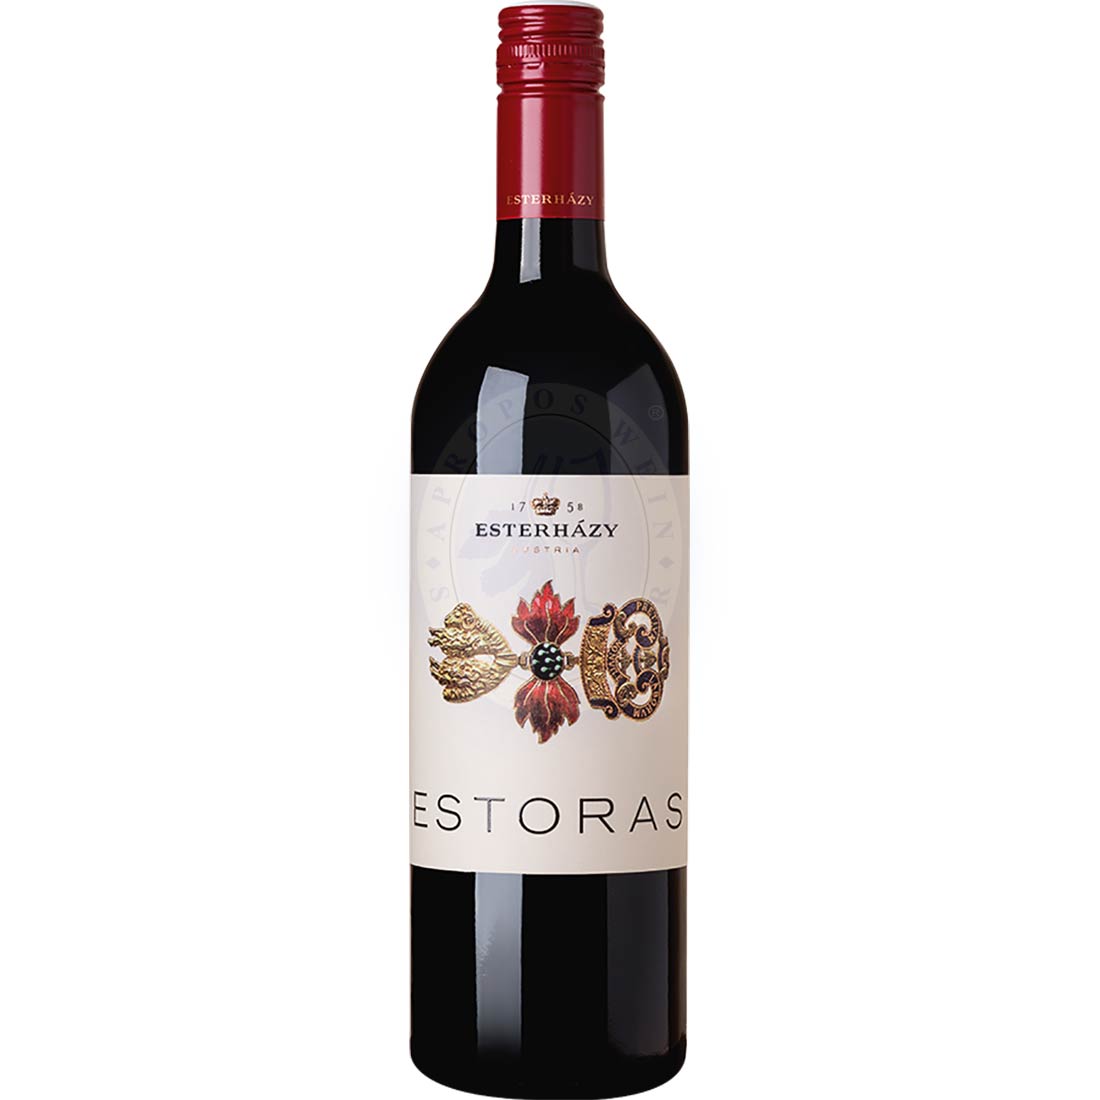 Esterhazy Estoras Rot 2020 0,75l